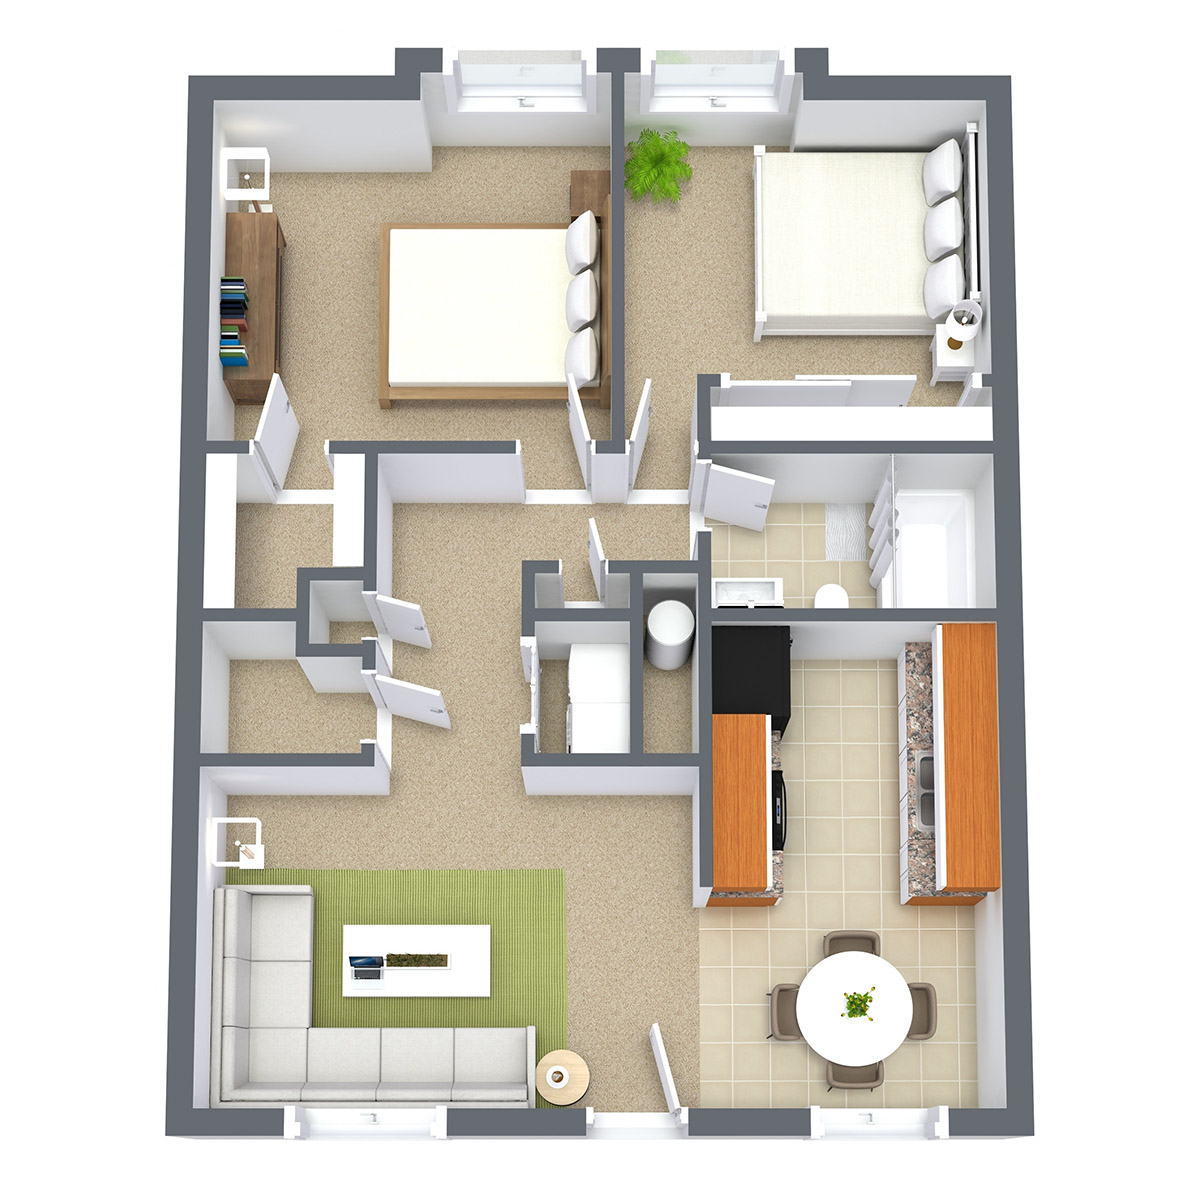 Prairie West - Floorplan - 2 Bedroom | Classic